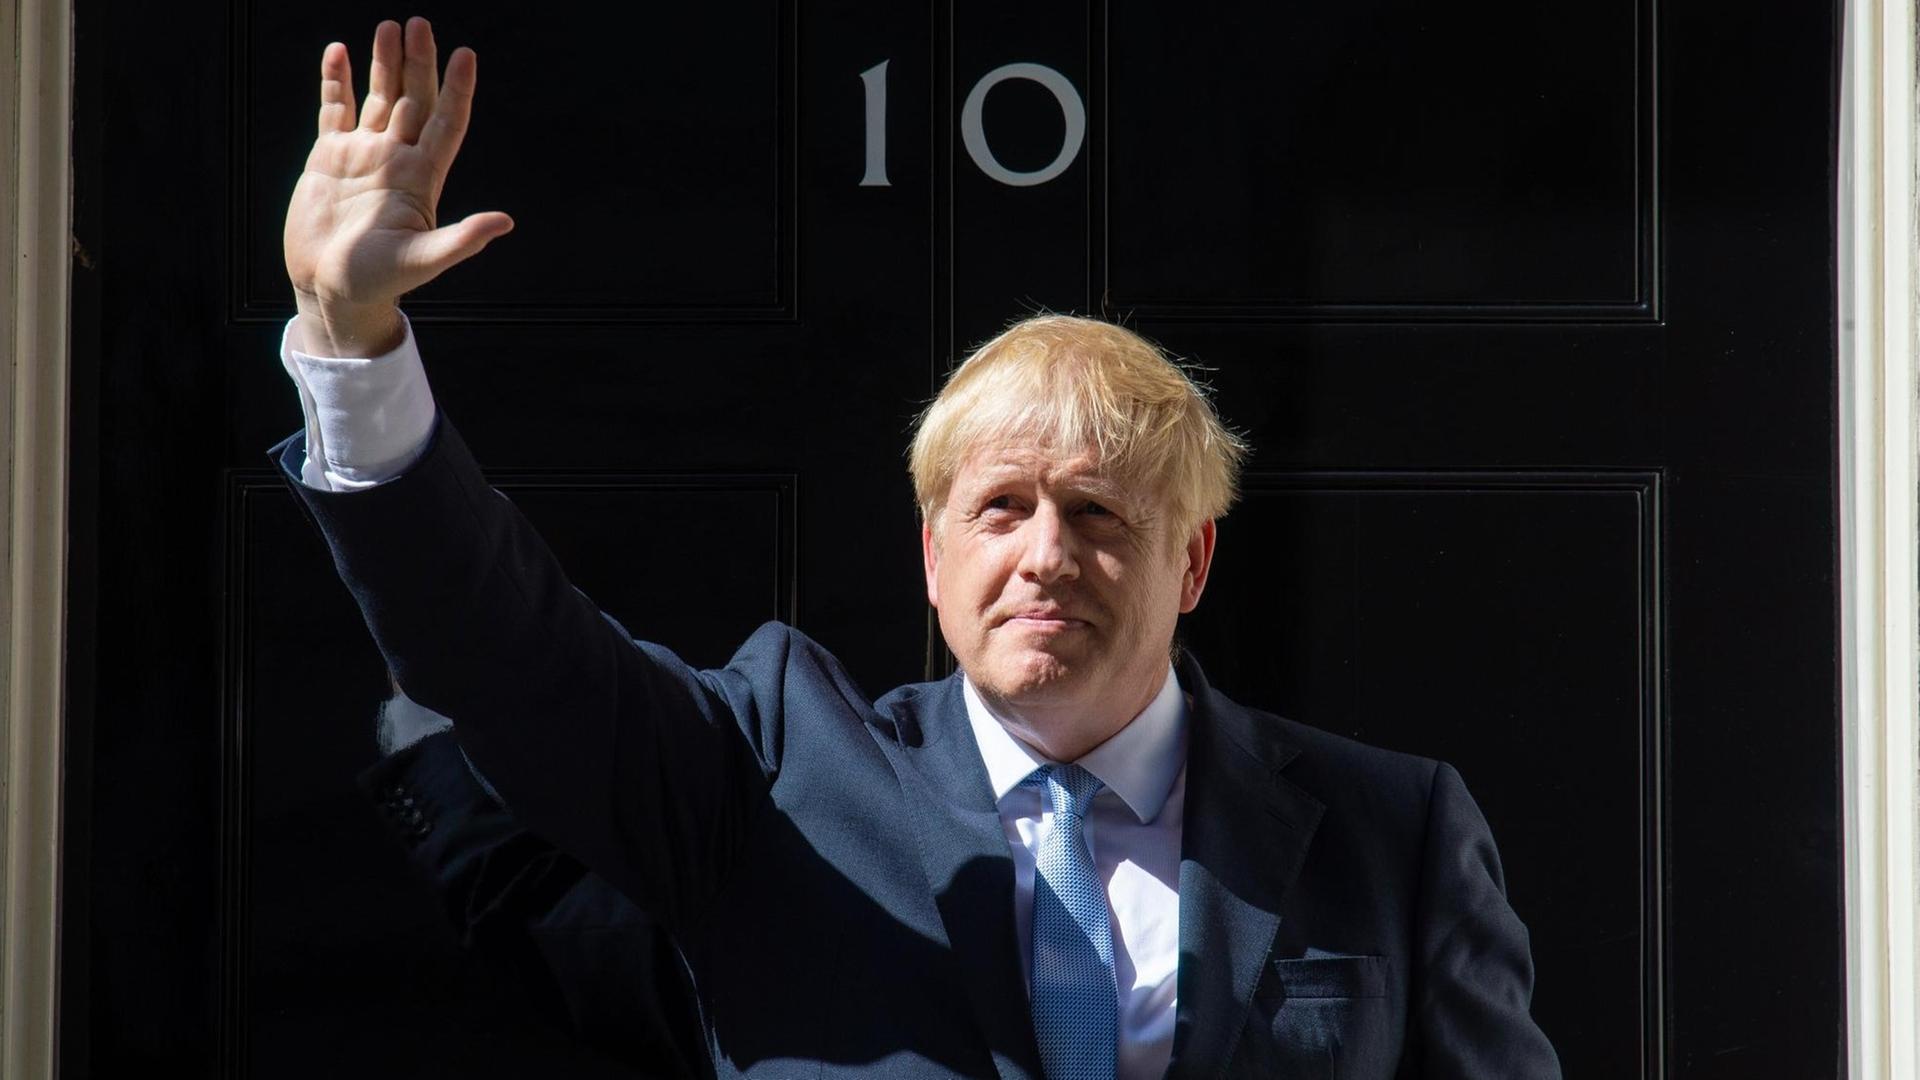 24.07.2019, Großbritannien, London: Boris Johnson, neuer Premierminister von Großbritannien, winkt bei seiner ersten Ansprache als neuer Premierminister vor der 10 Downing Street.